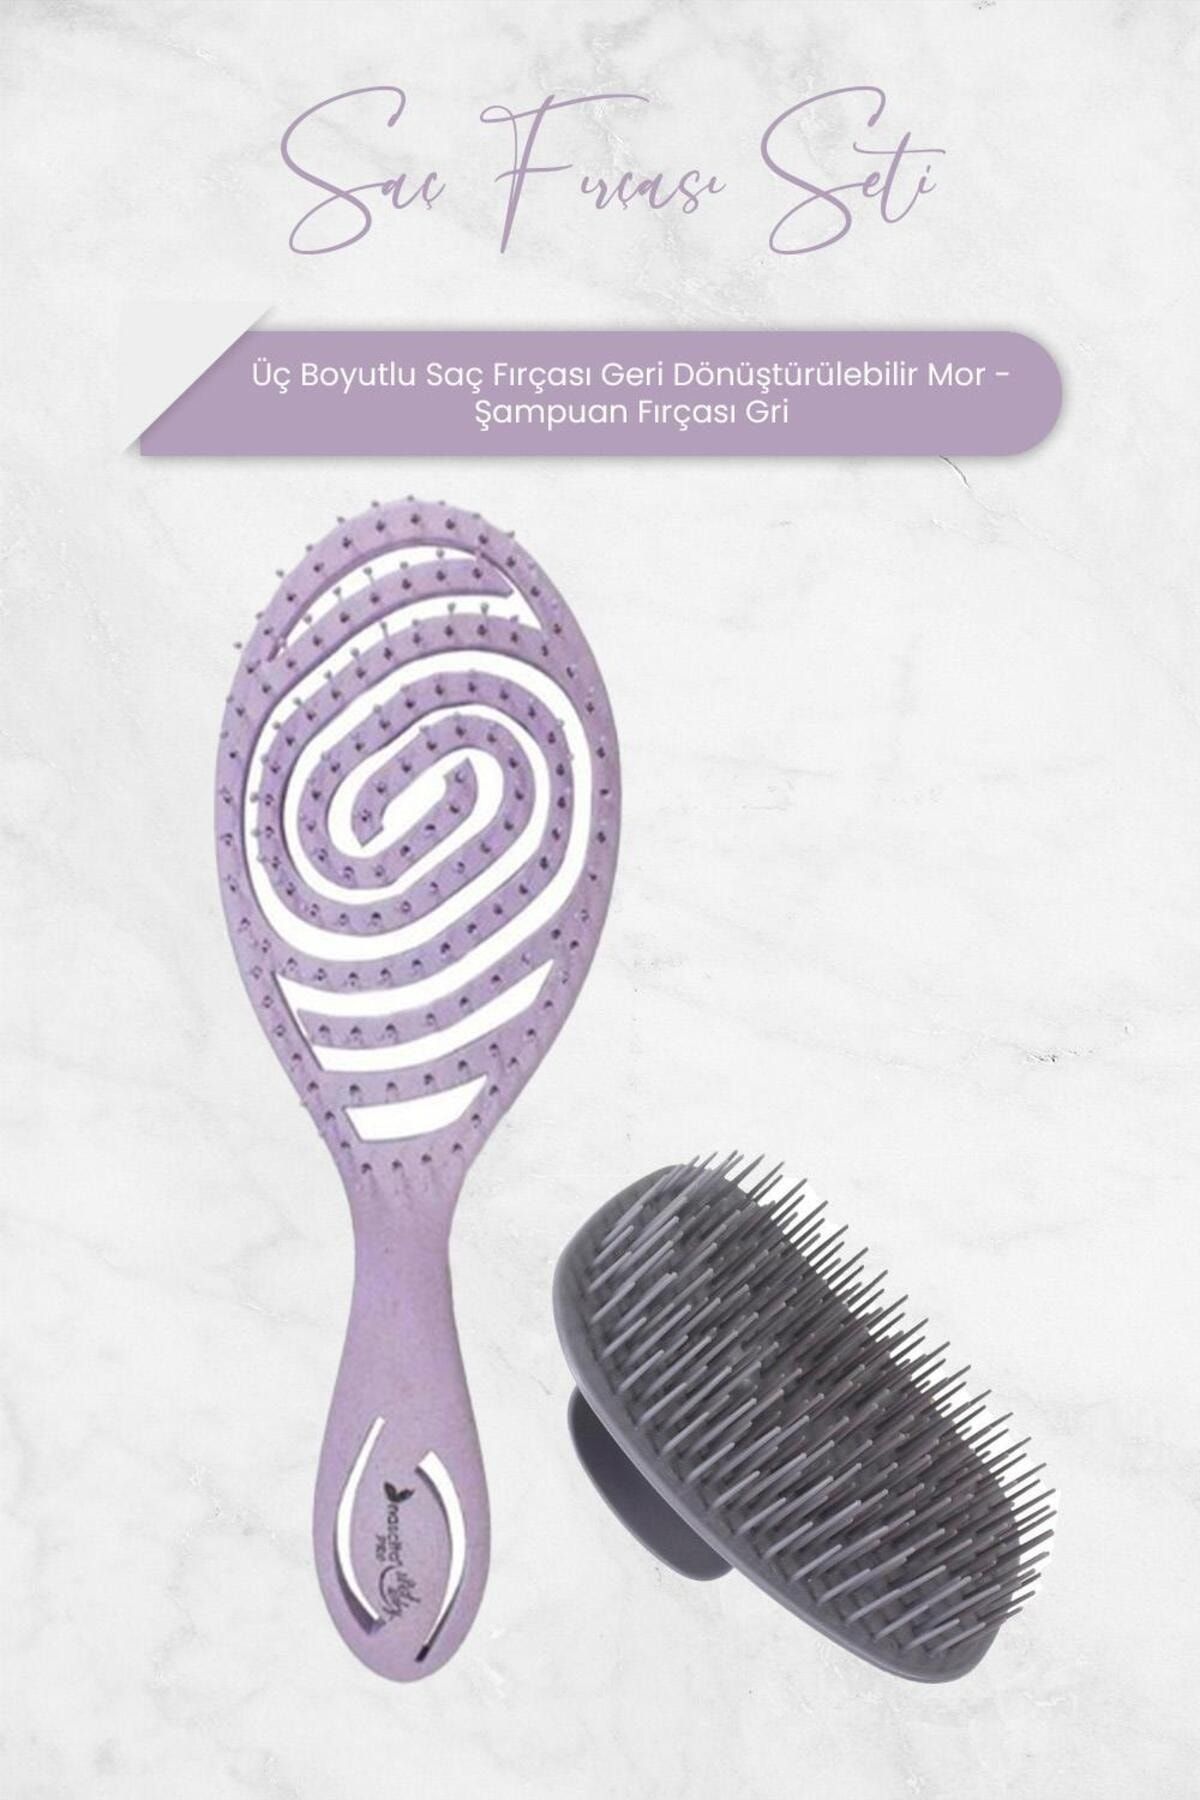 Nascita Üç Boyutlu Saç Fırçası Geri Dönüştürülebilir Mor ve Şampuan Fırçası Gri